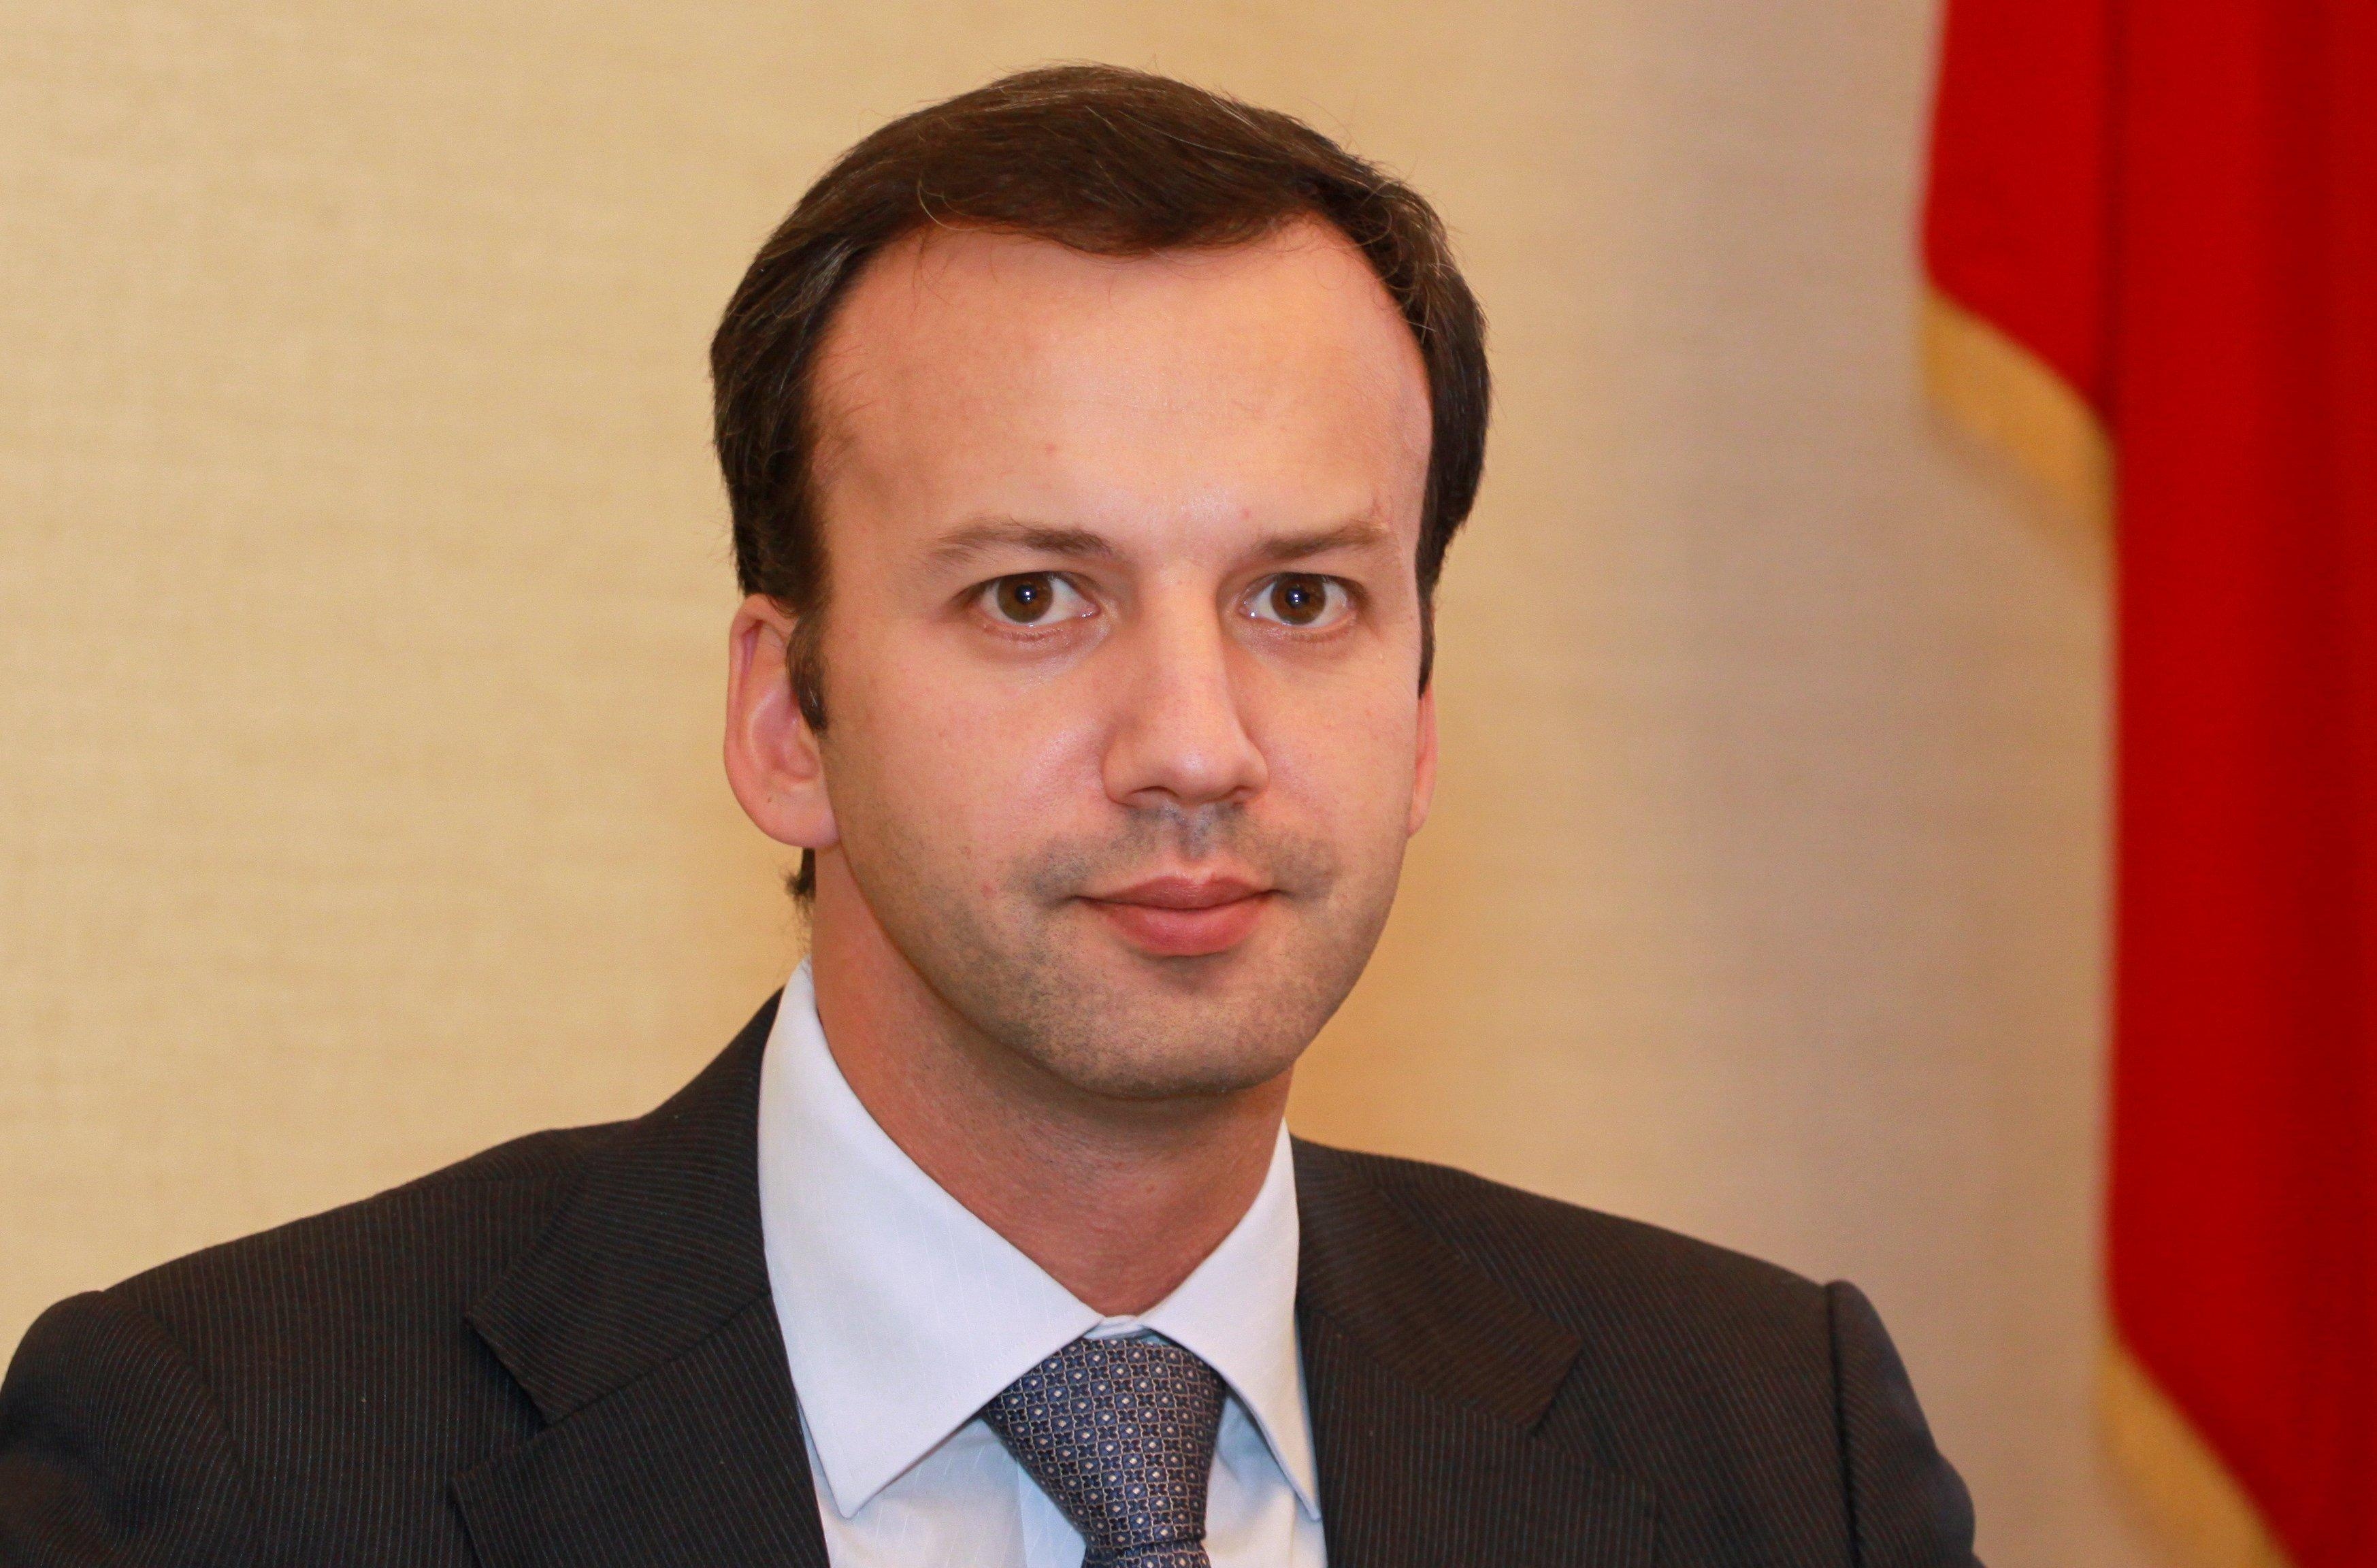 Аркадий Владимирович Дворкович (1972) - российский экономист, Заместитель председателя правительства РФ с 2012 года